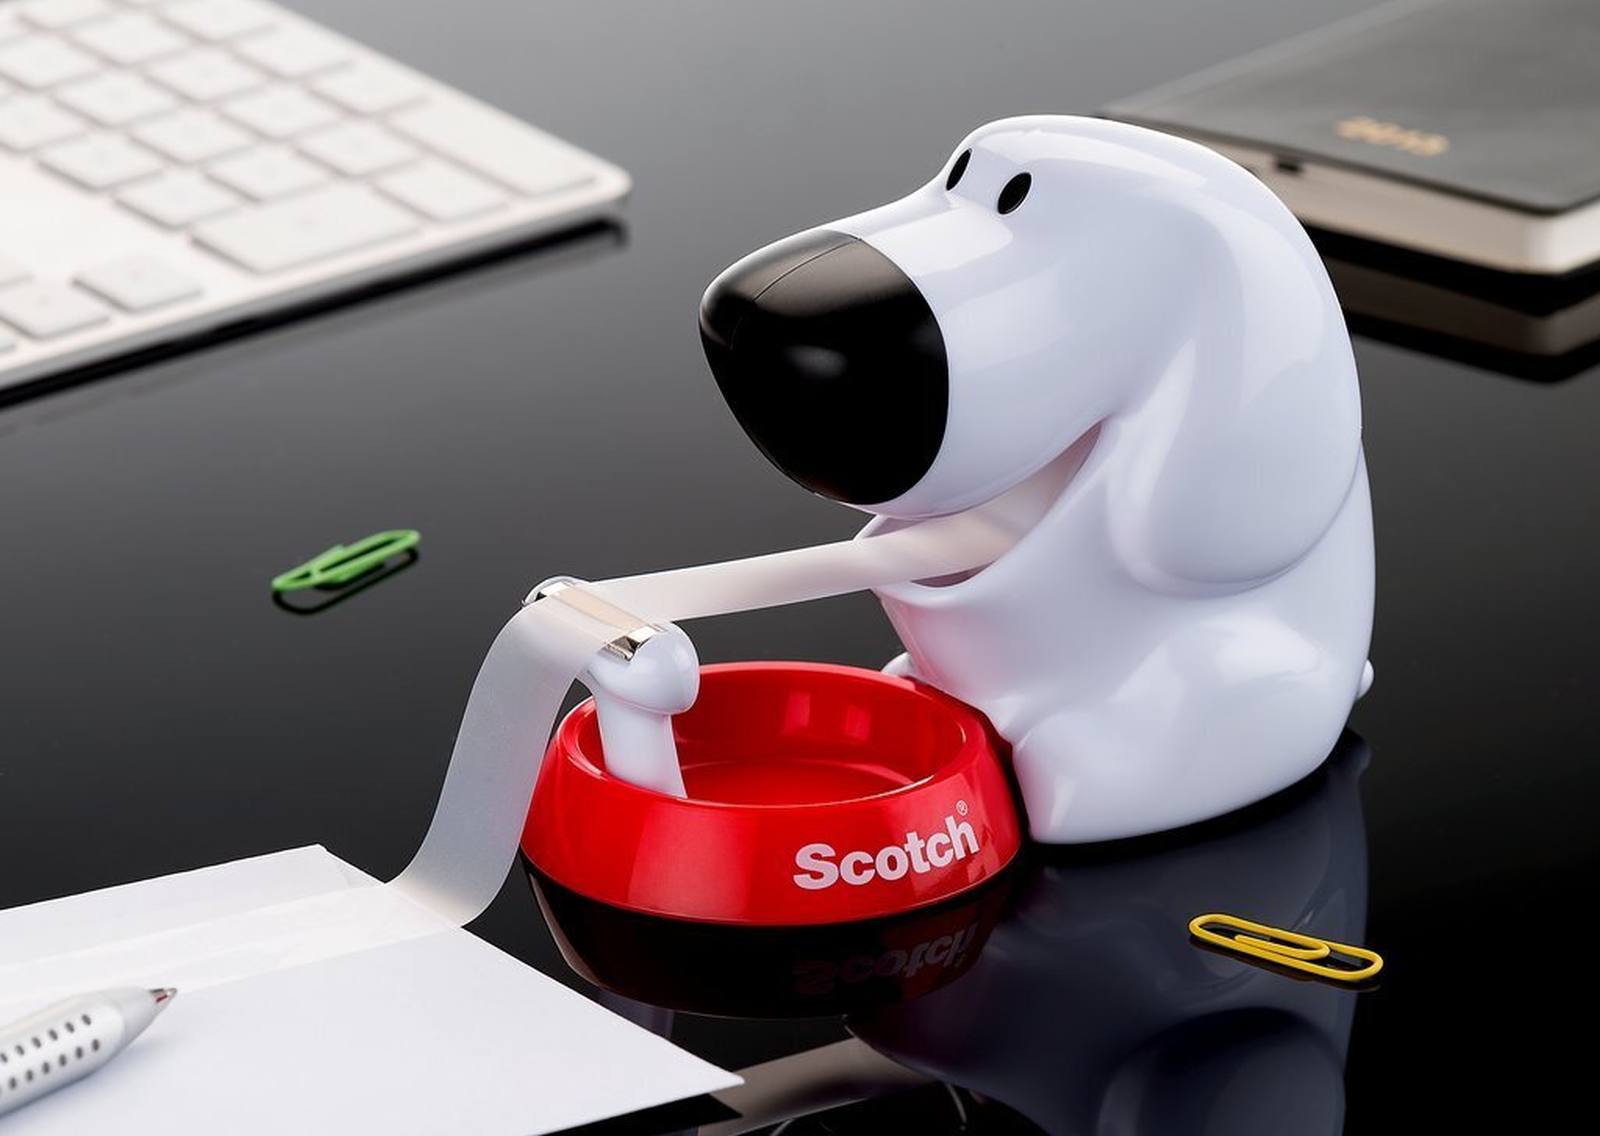 3M Scotch dog dispenser manuale + 1 rotolo di nastro adesivo Scotch Magic 19 mm x 8,89 m